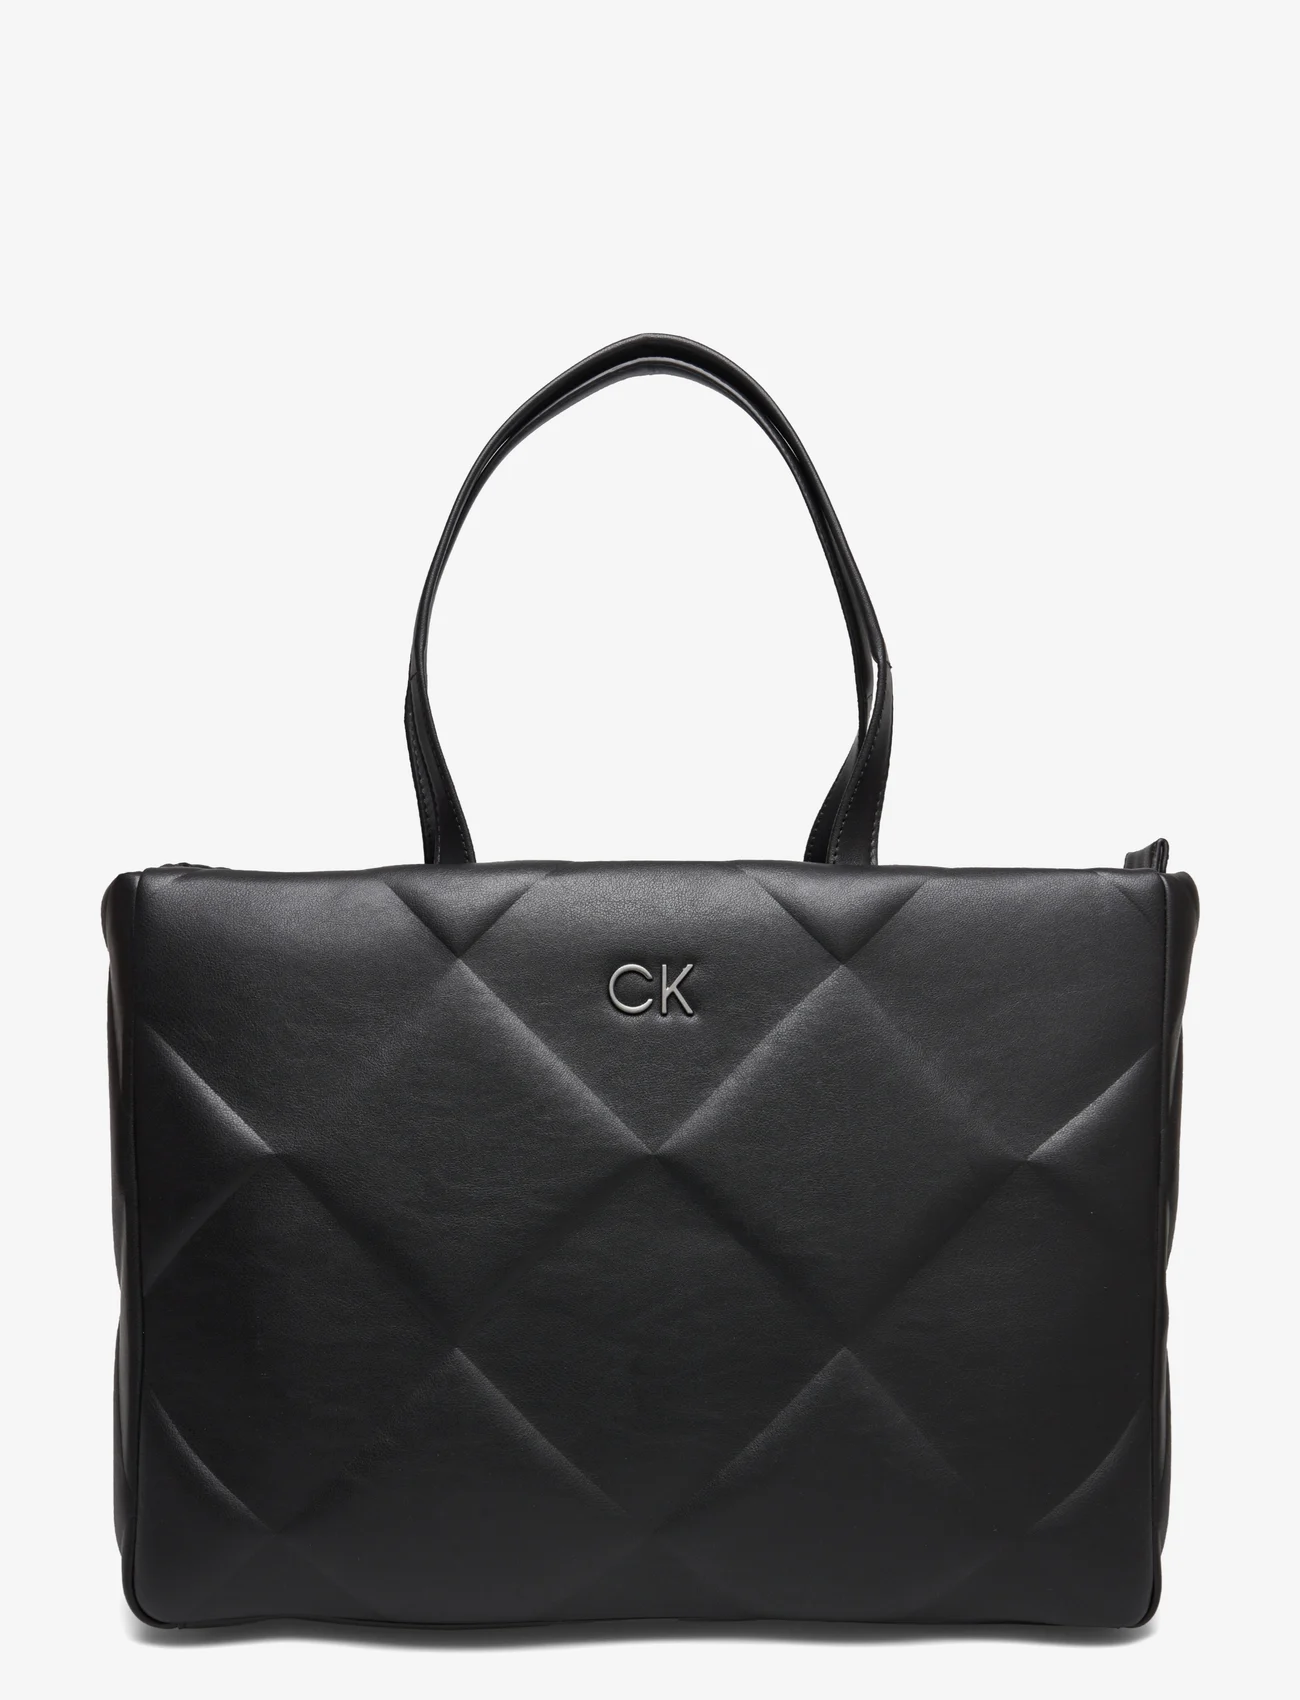 Calvin Klein - RE-LOCK QUILT TOTE LG - ck black - 0